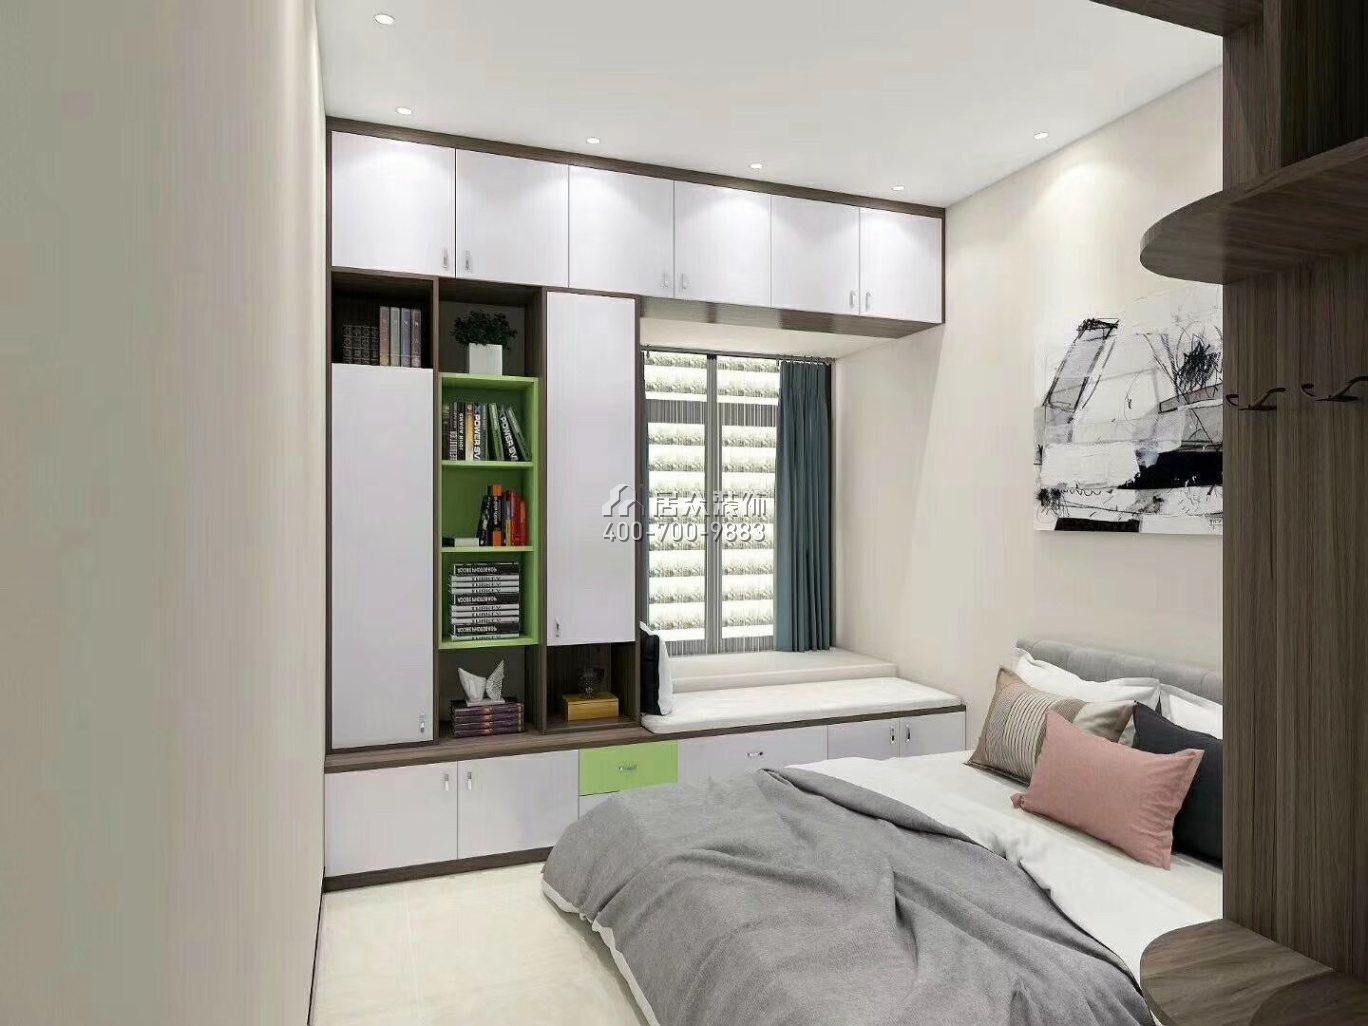 星河丹堤140平方米欧式风格平层户型卧室装修效果图